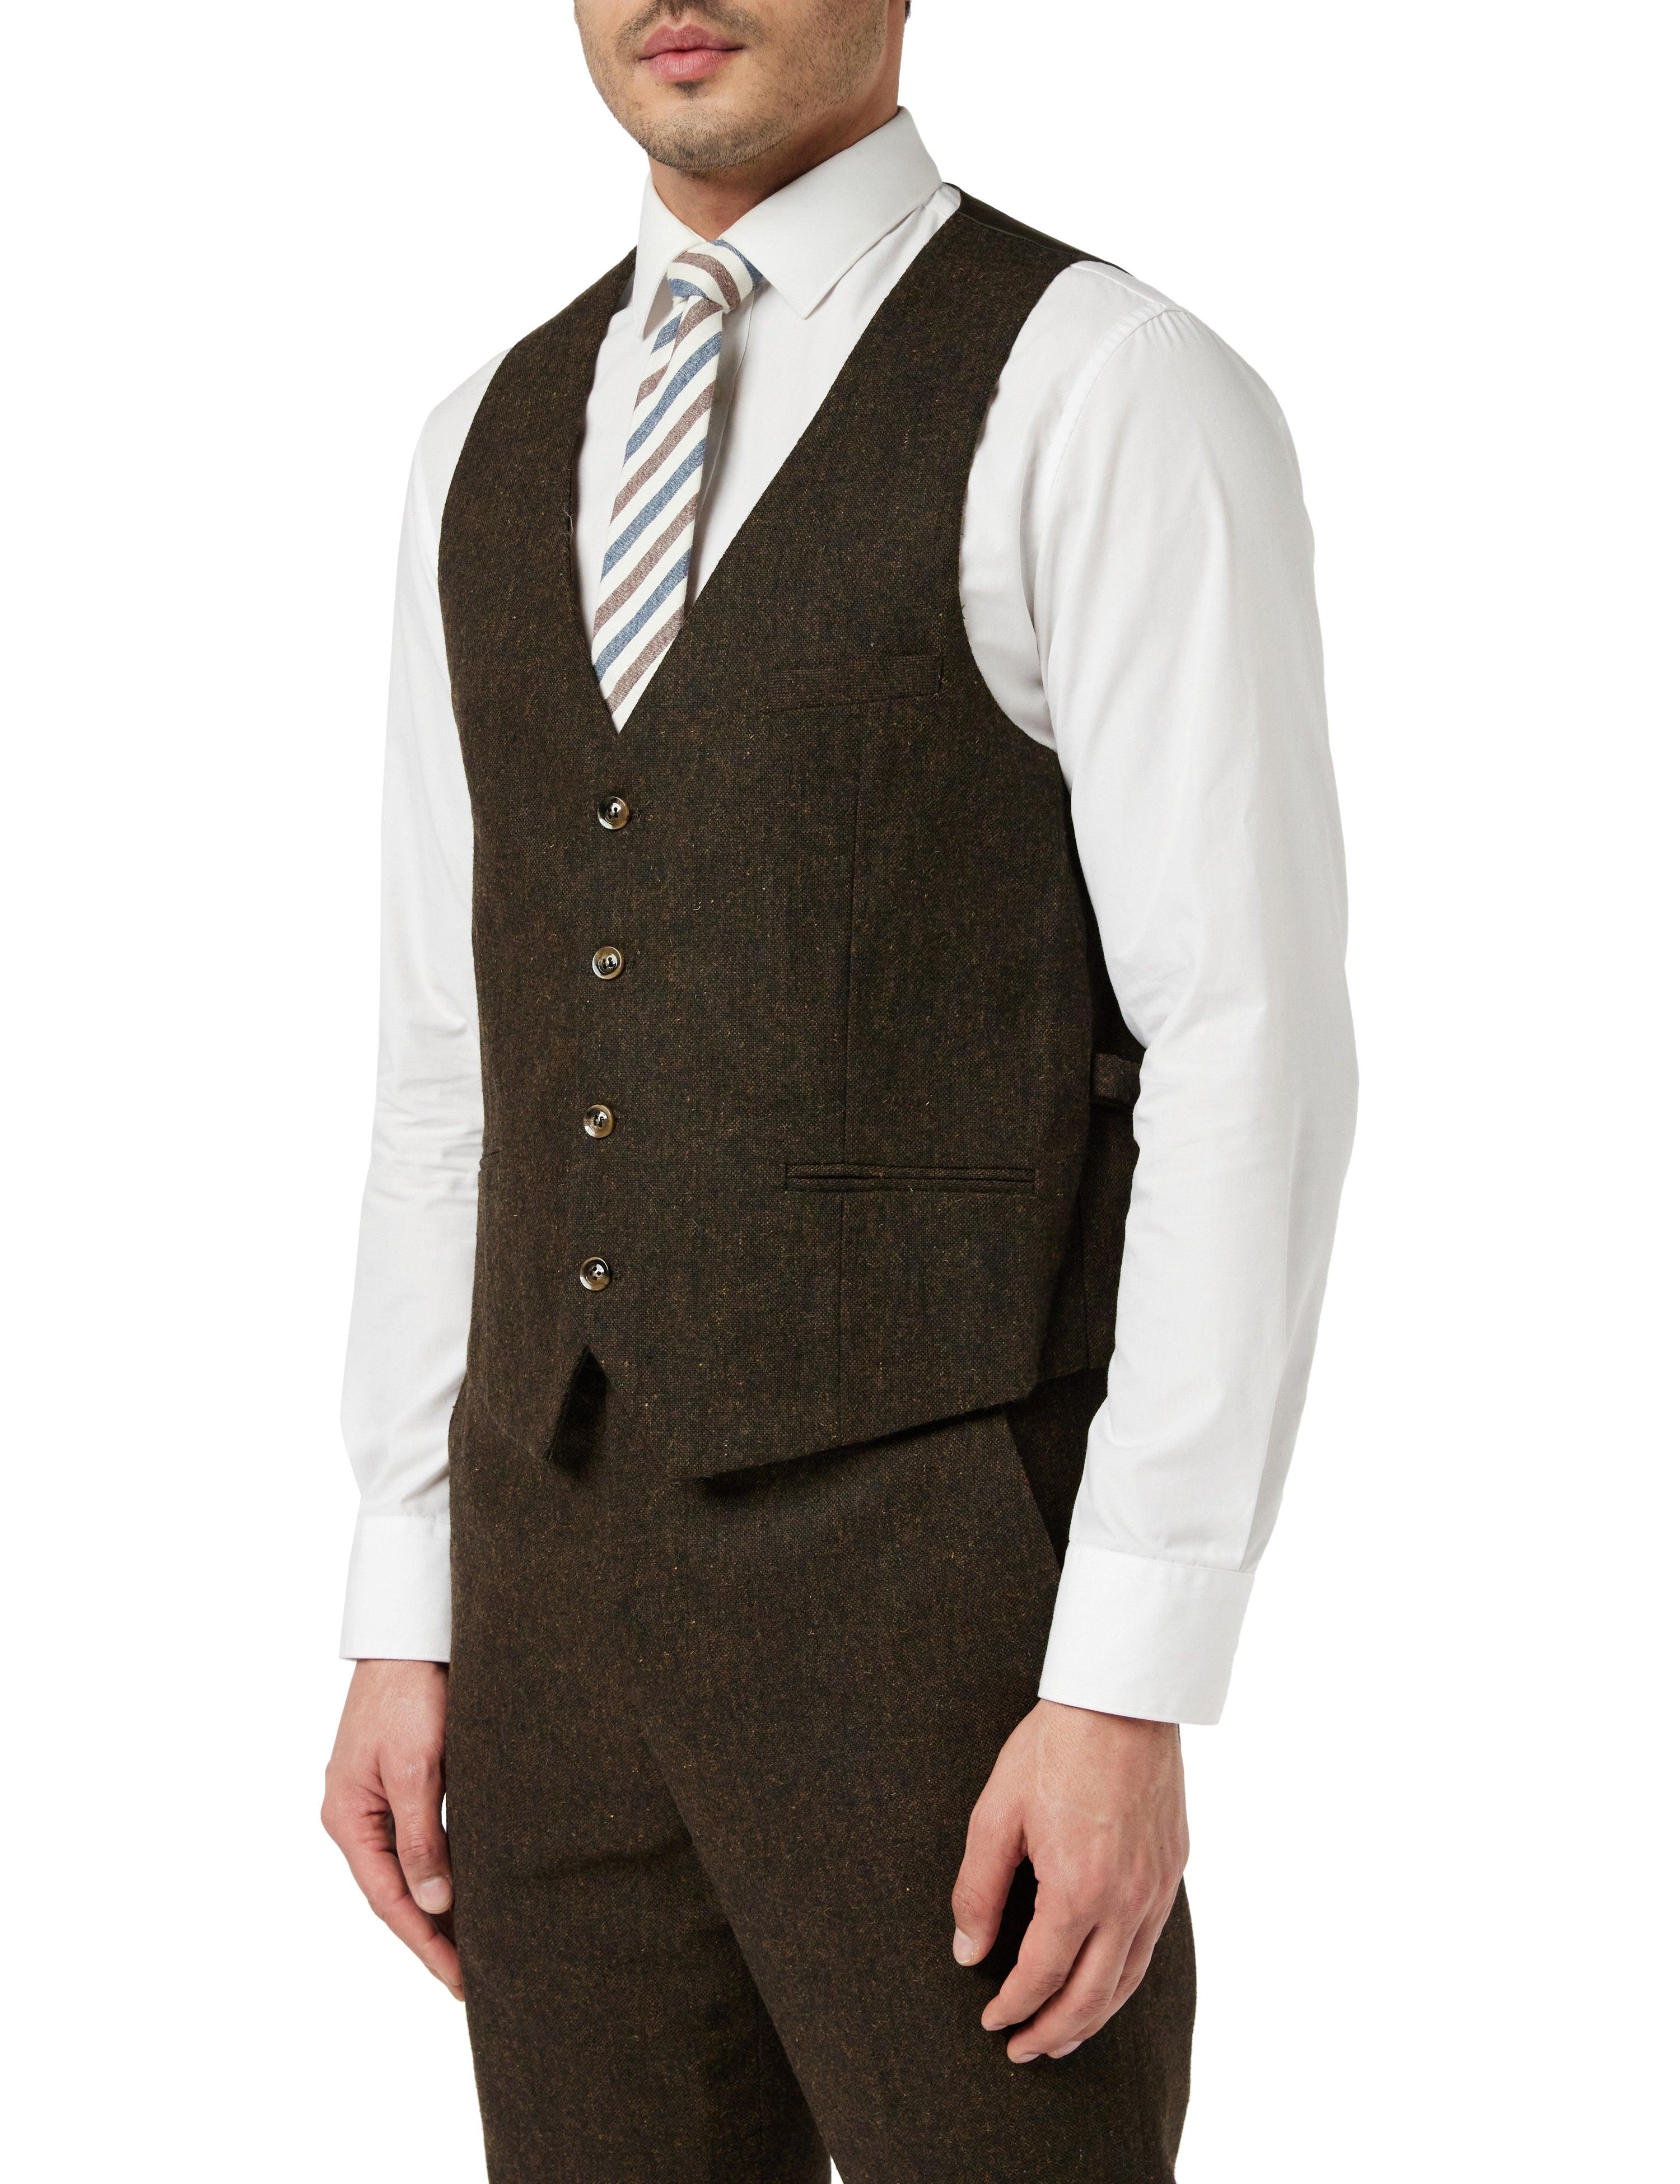 Brown Tweed Tailored Suit